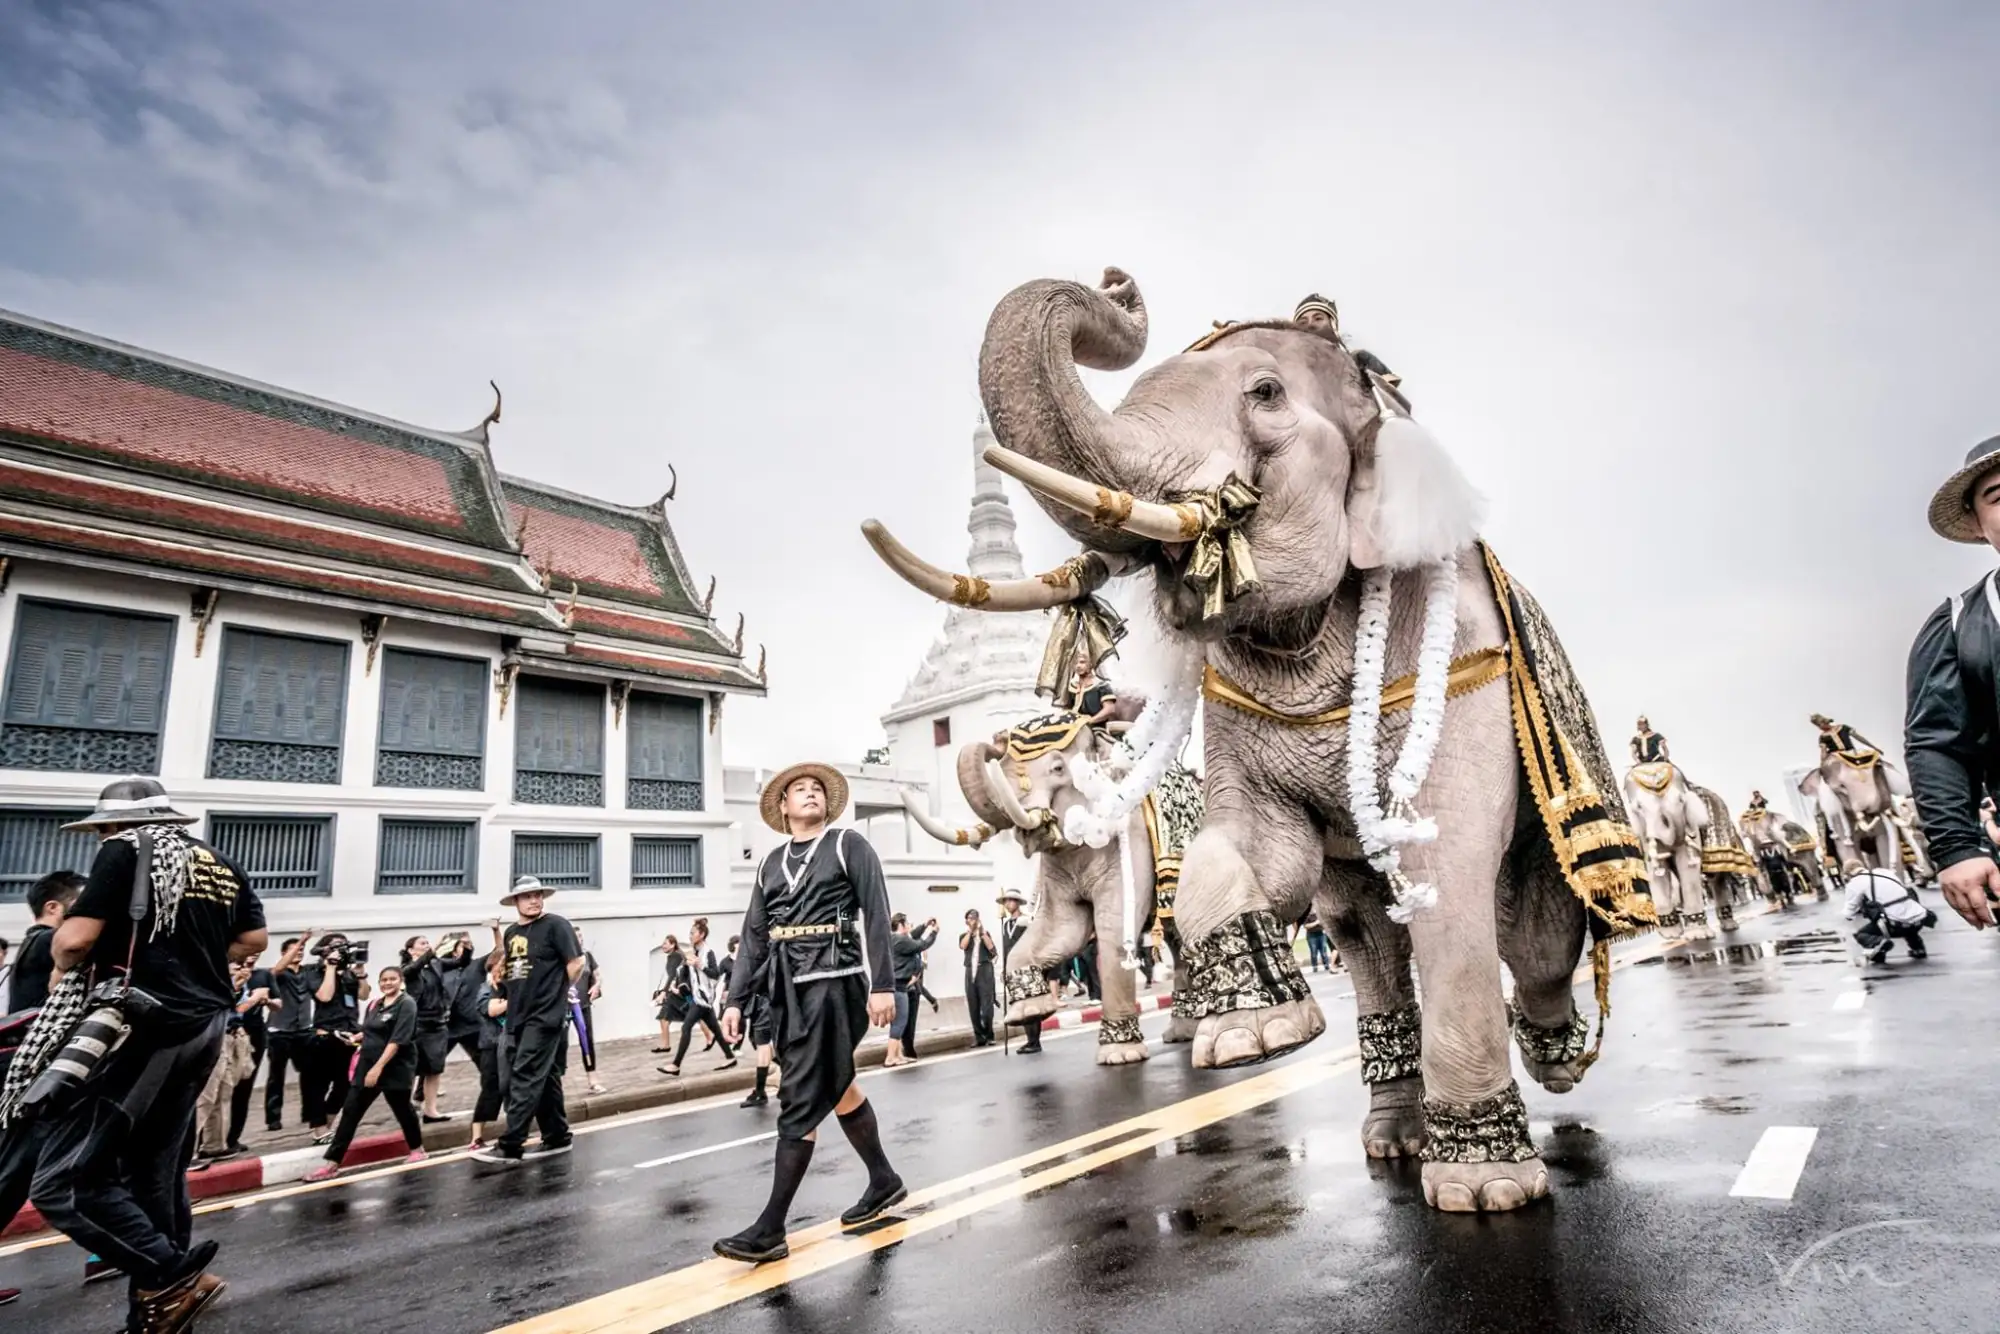 感念泰王提倡愛護動物 象群前往大皇宮致敬